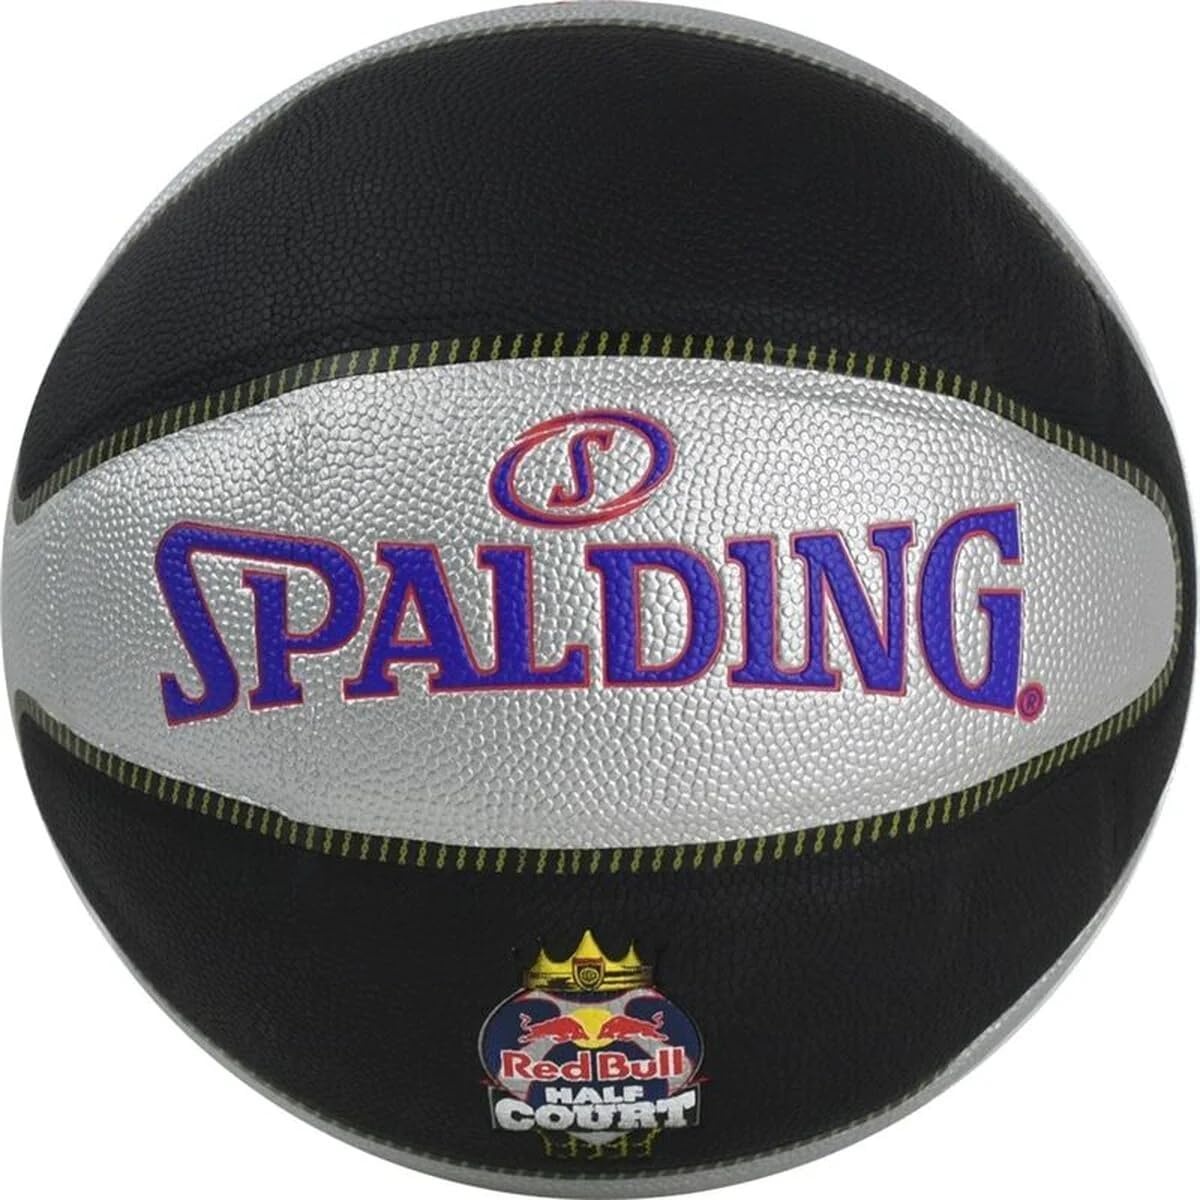 Spalding 76863Z Basketbälle Black/Silver 7